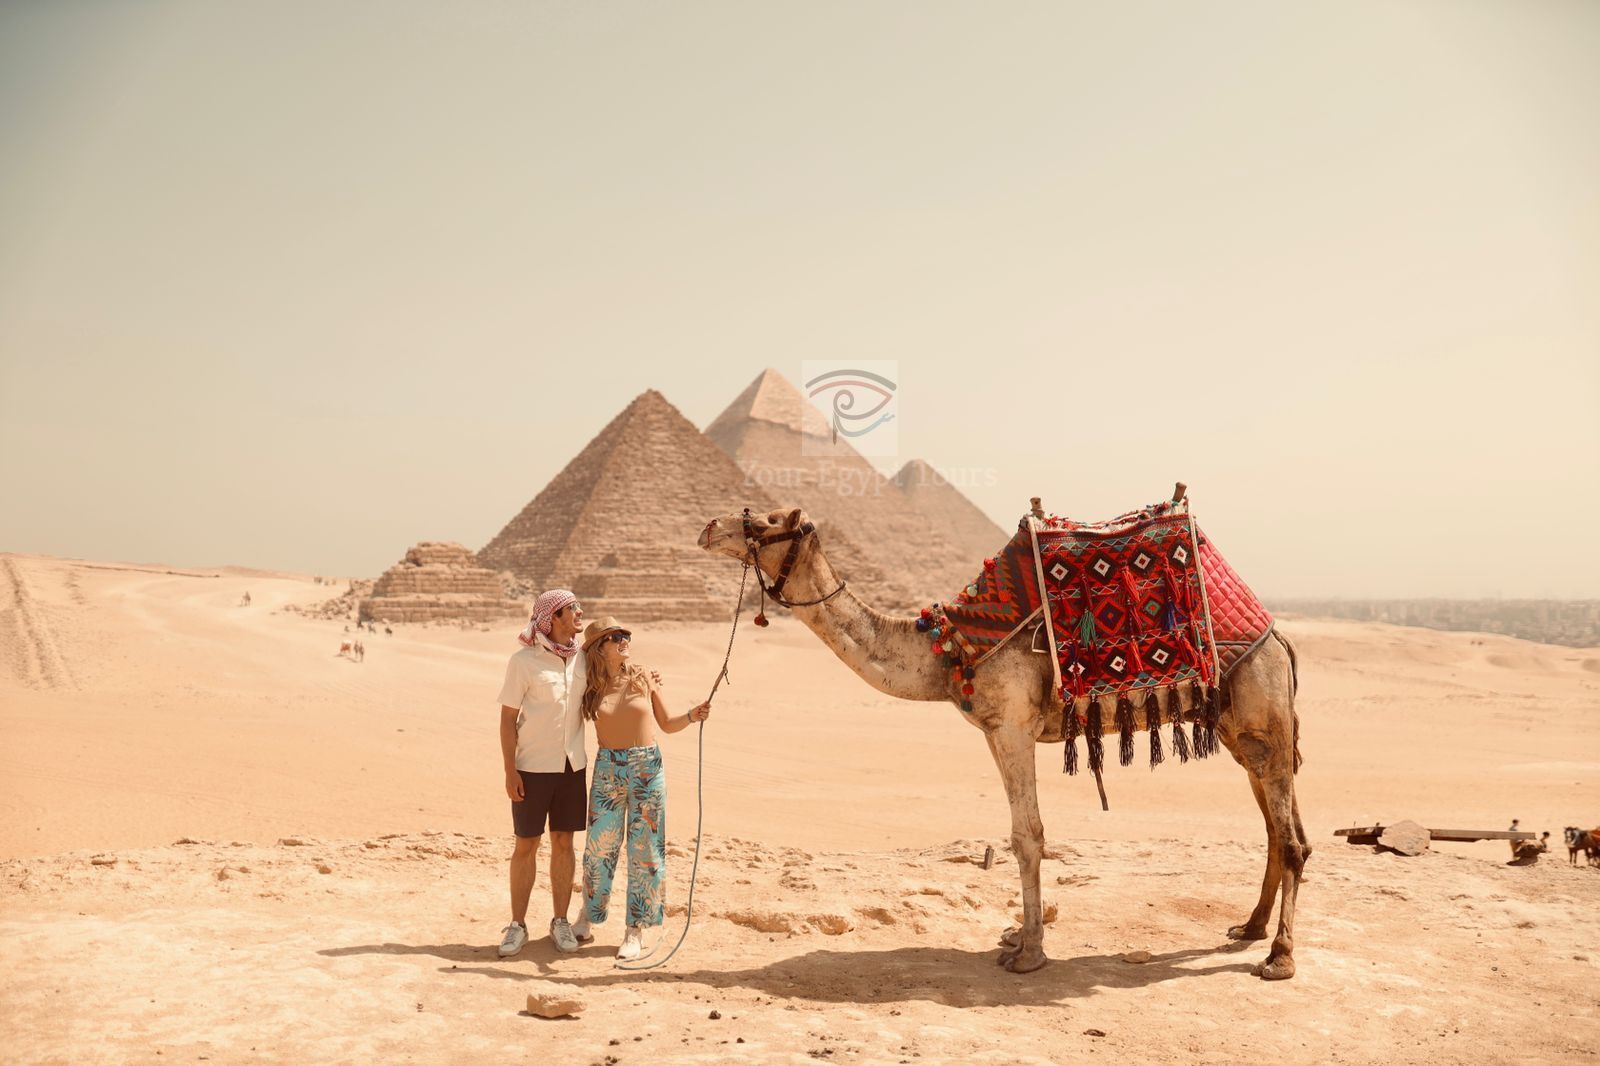 Honeymoon in Pyramids